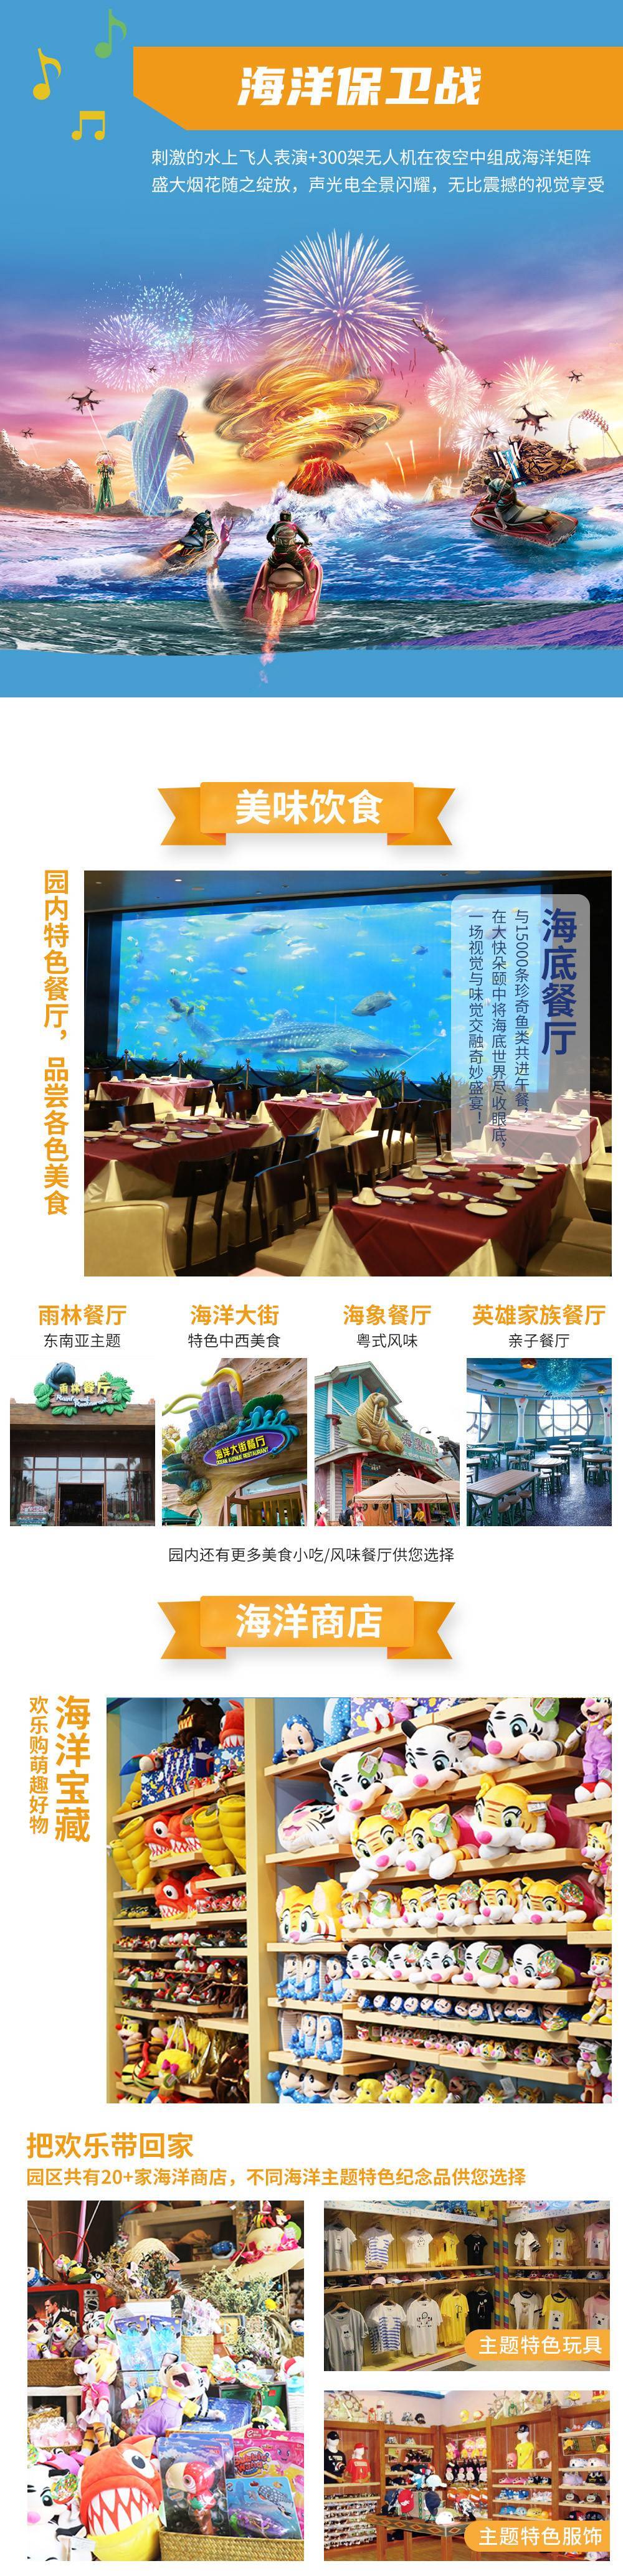 【暑期特惠】珠海长隆海洋王国 1 日两次票+企鹅酒店自助 午餐 标准套票